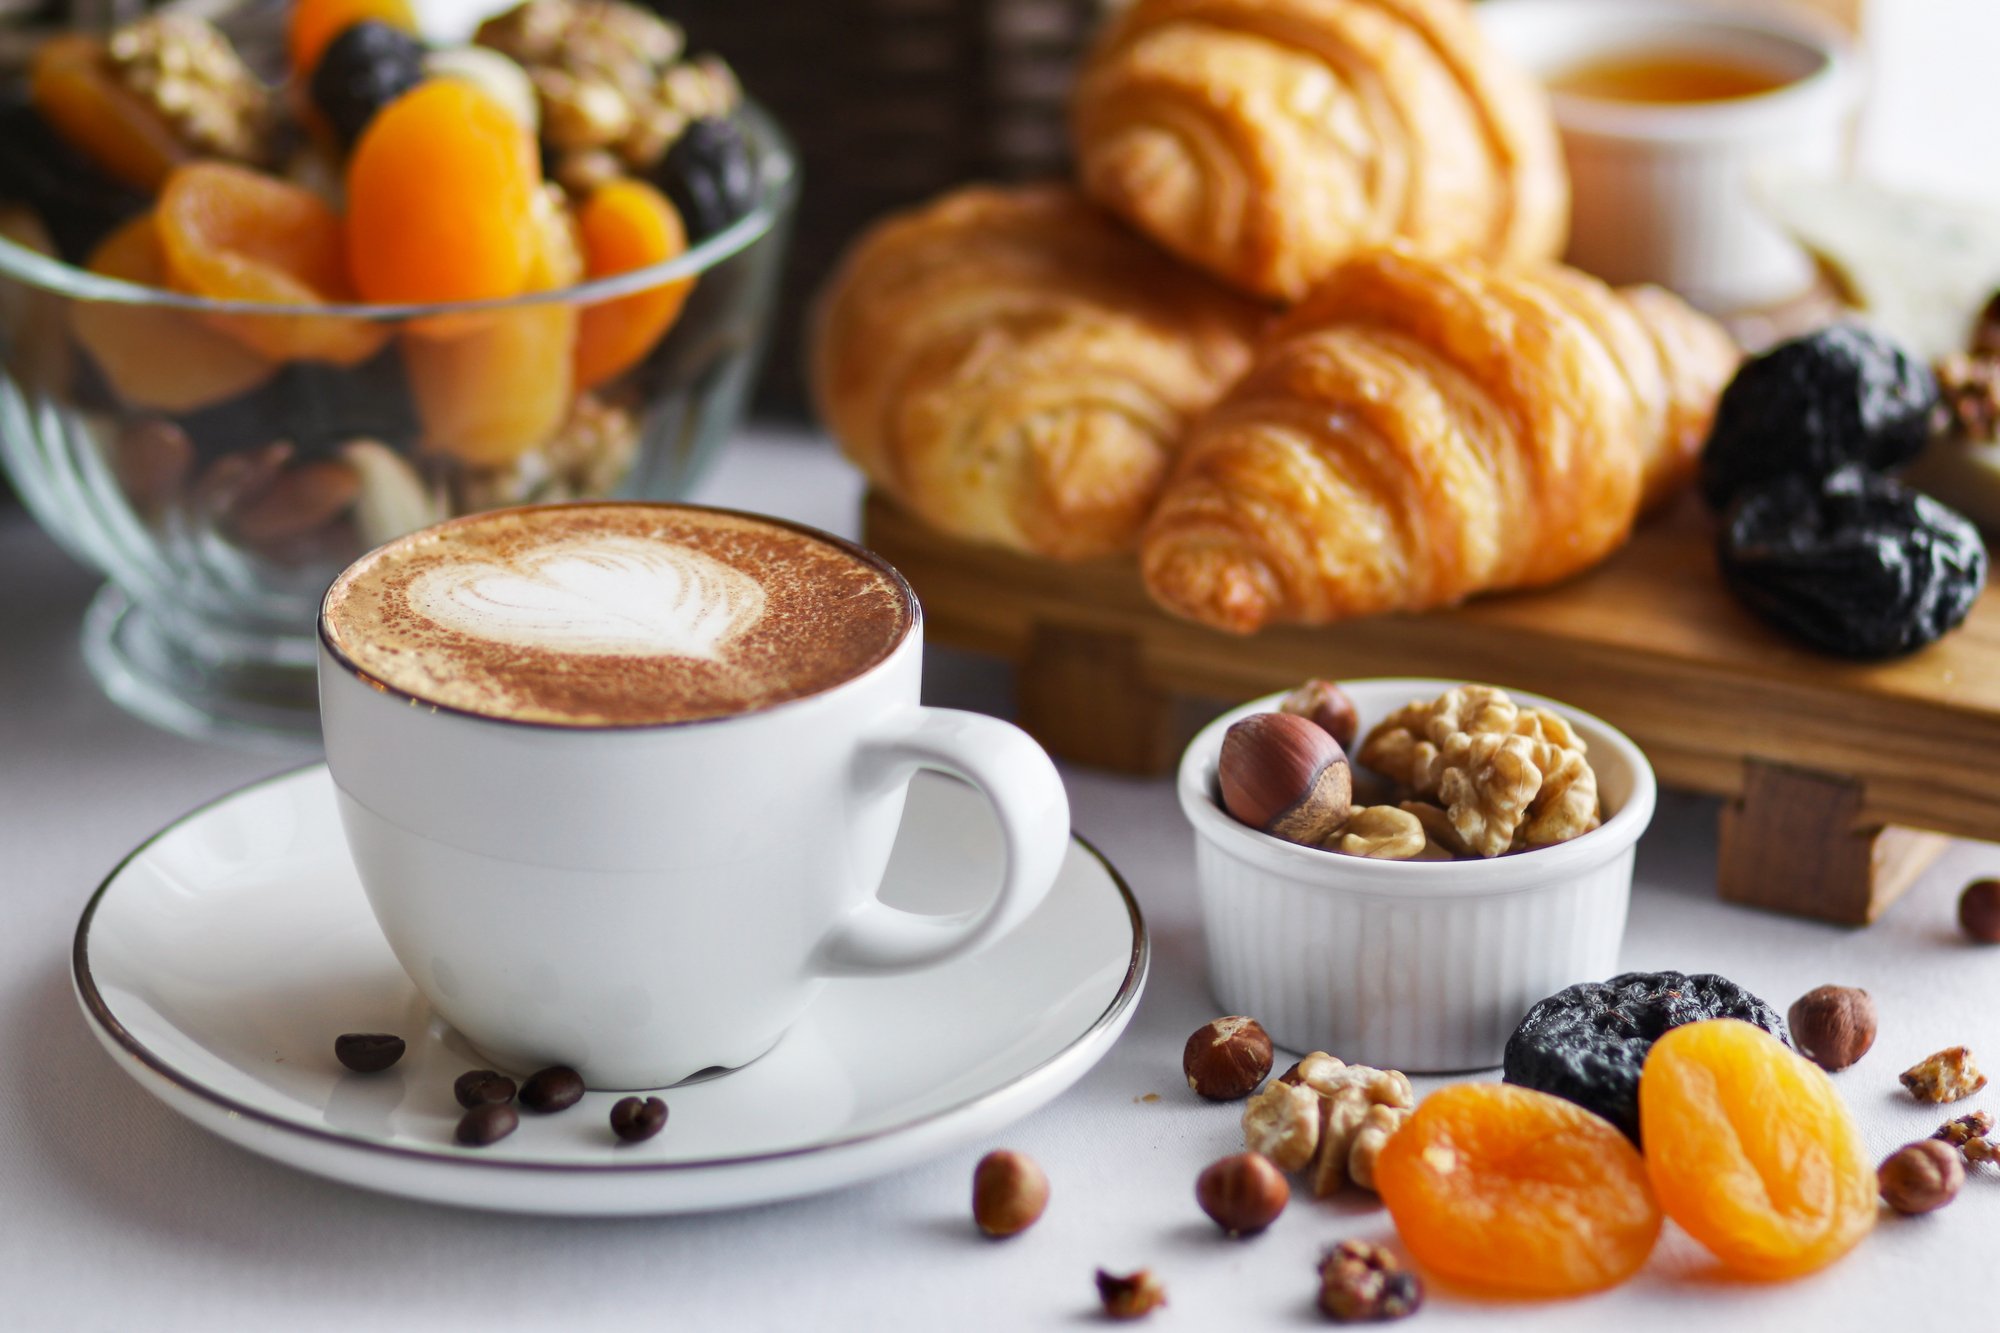 Утро называться. Завтрак с кофе. Утренний завтрак с кофе. Кофе и выпечка. Красивый завтрак с кофе.